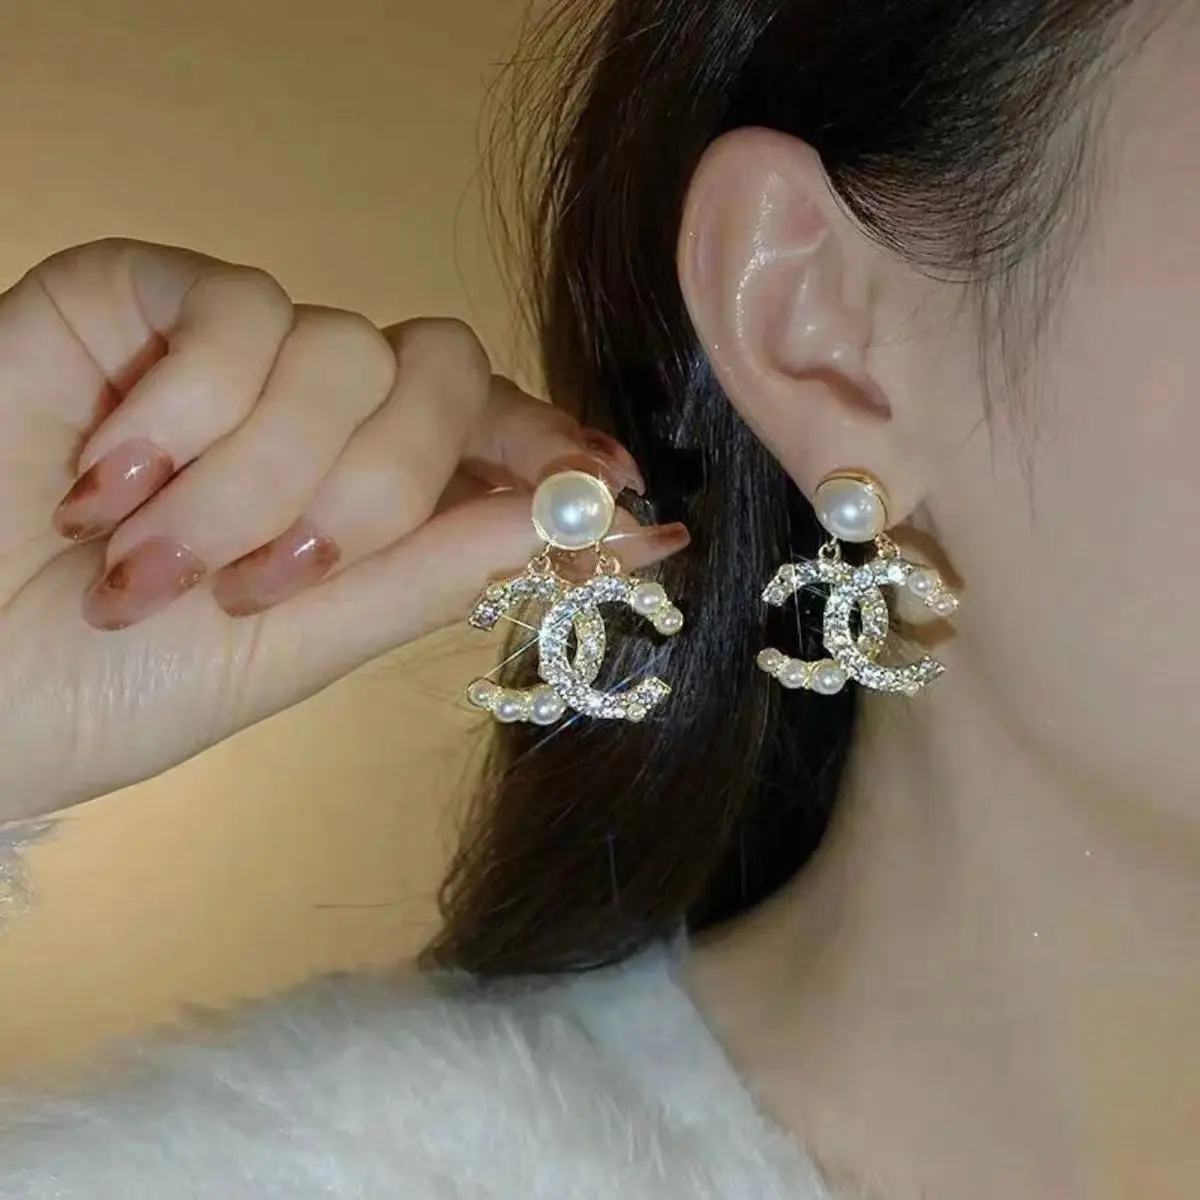 도매 디자이너 귀걸이 인기있는 브랜드 CC 고품질 패션 귀걸이 진주 드롭 귀걸이